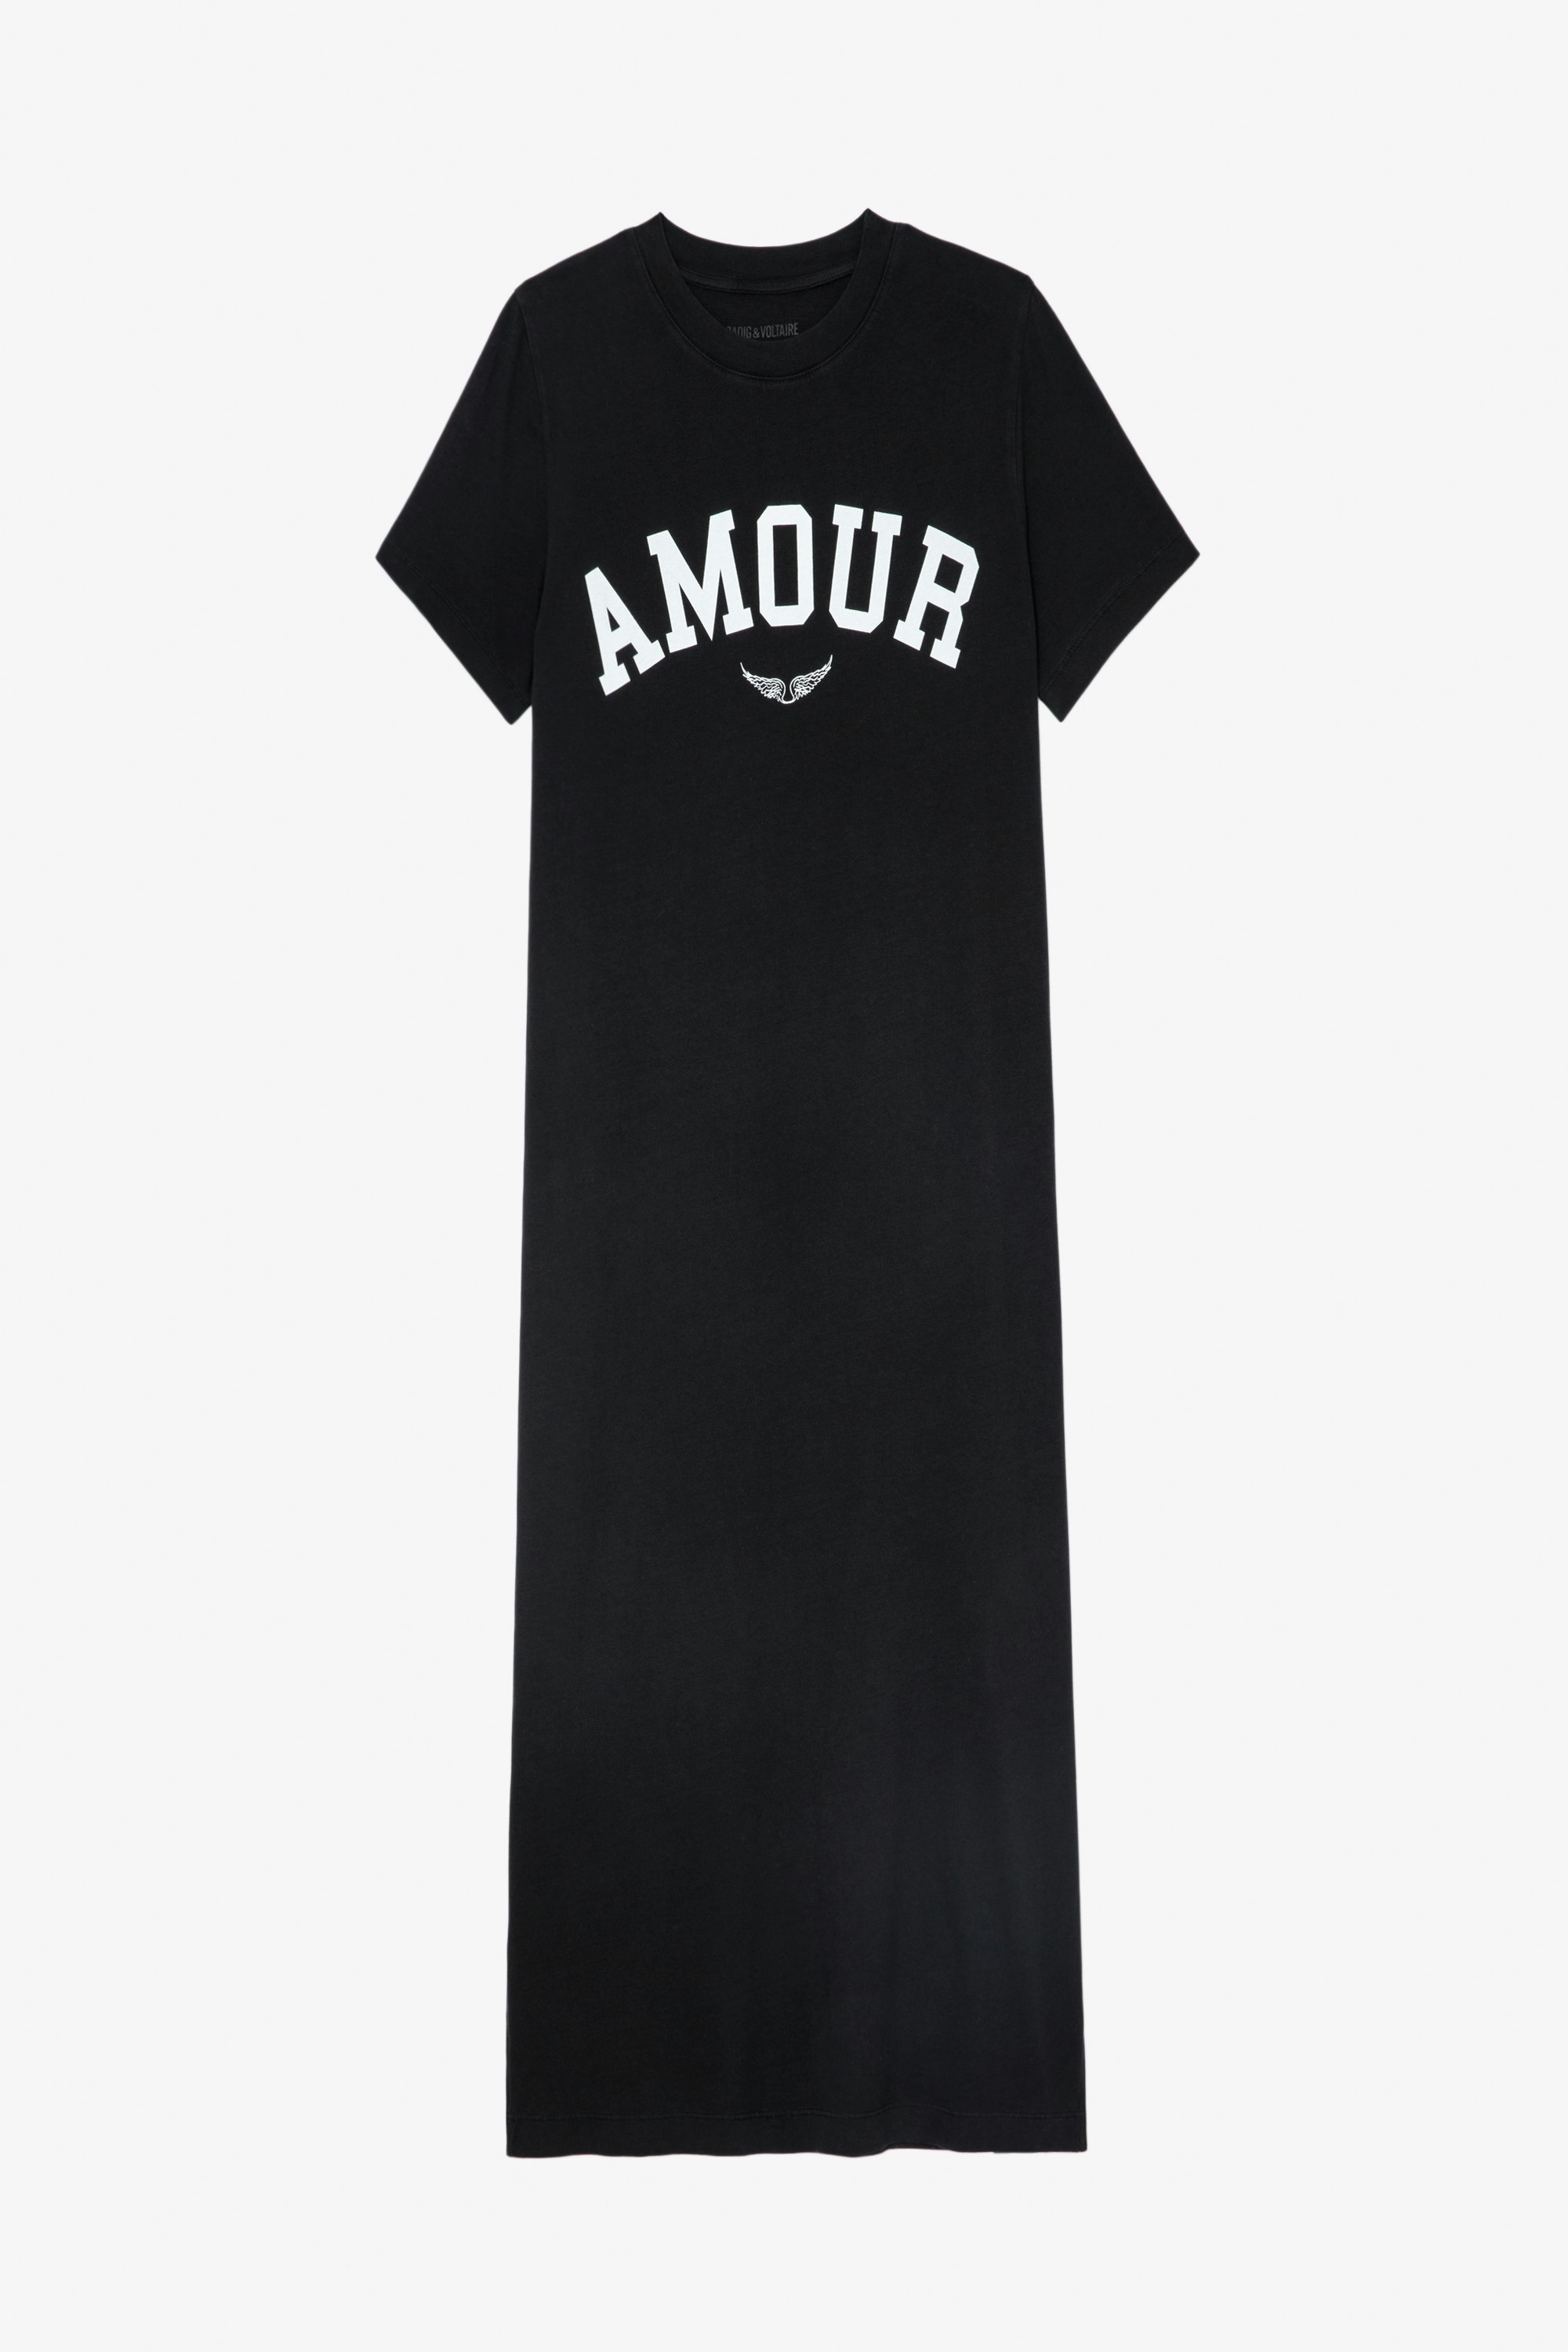 Zaid Dress ブラック コットンマキシドレス「Amour」 のメッセージと翼モチーフレディース